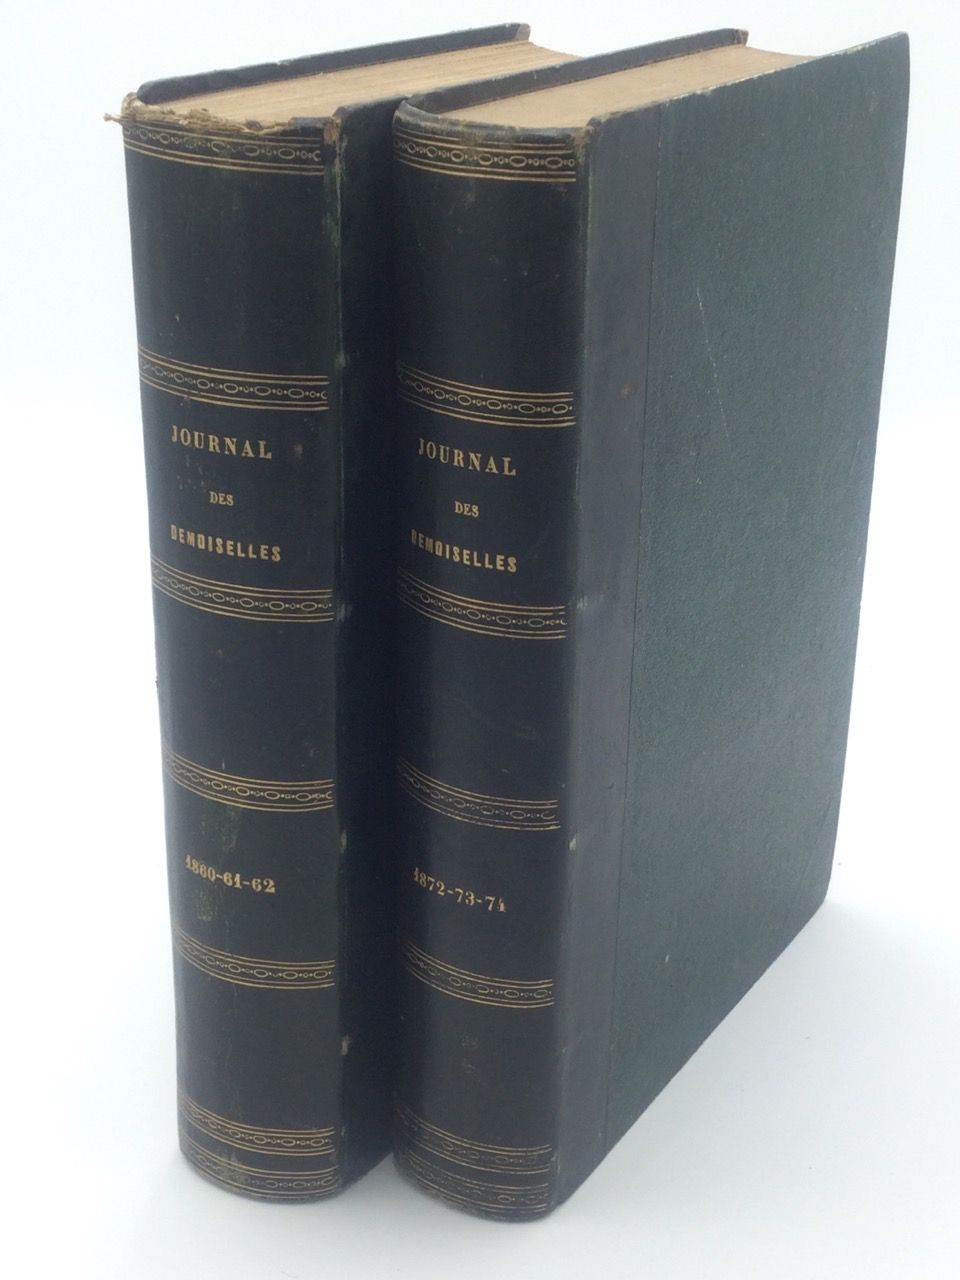 Null Demoiselles杂志》，2卷8开本，收录了1860-61-2年和1872-83-74年的内容，半皮革装订，书脊有标题，巴黎。